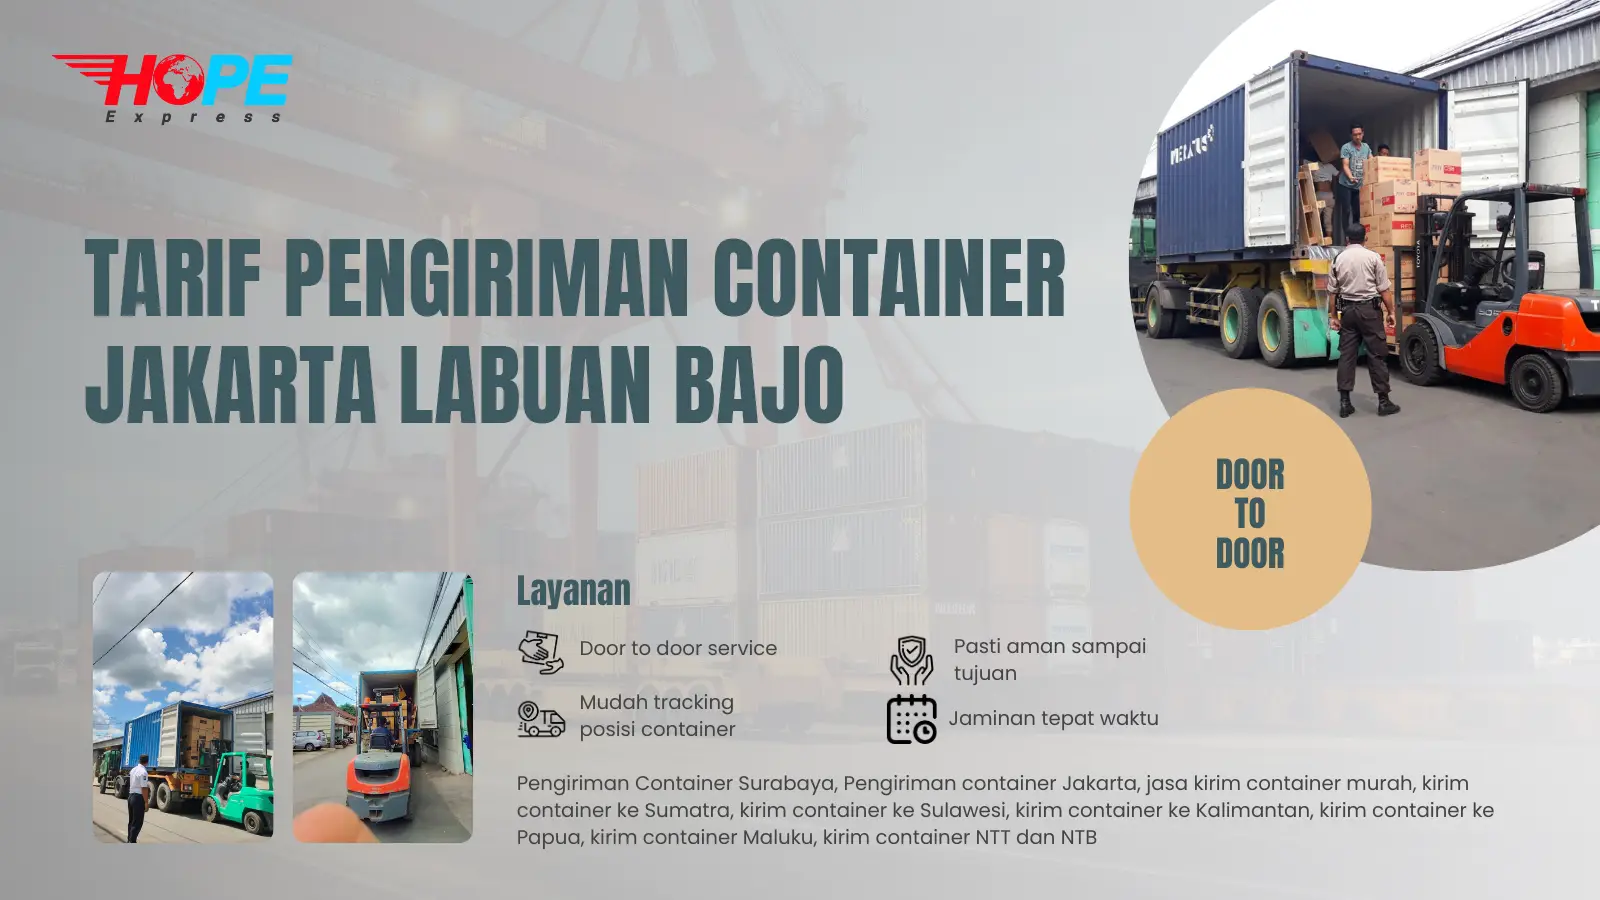 Tarif Pengiriman Container Jakarta Labuan Bajo